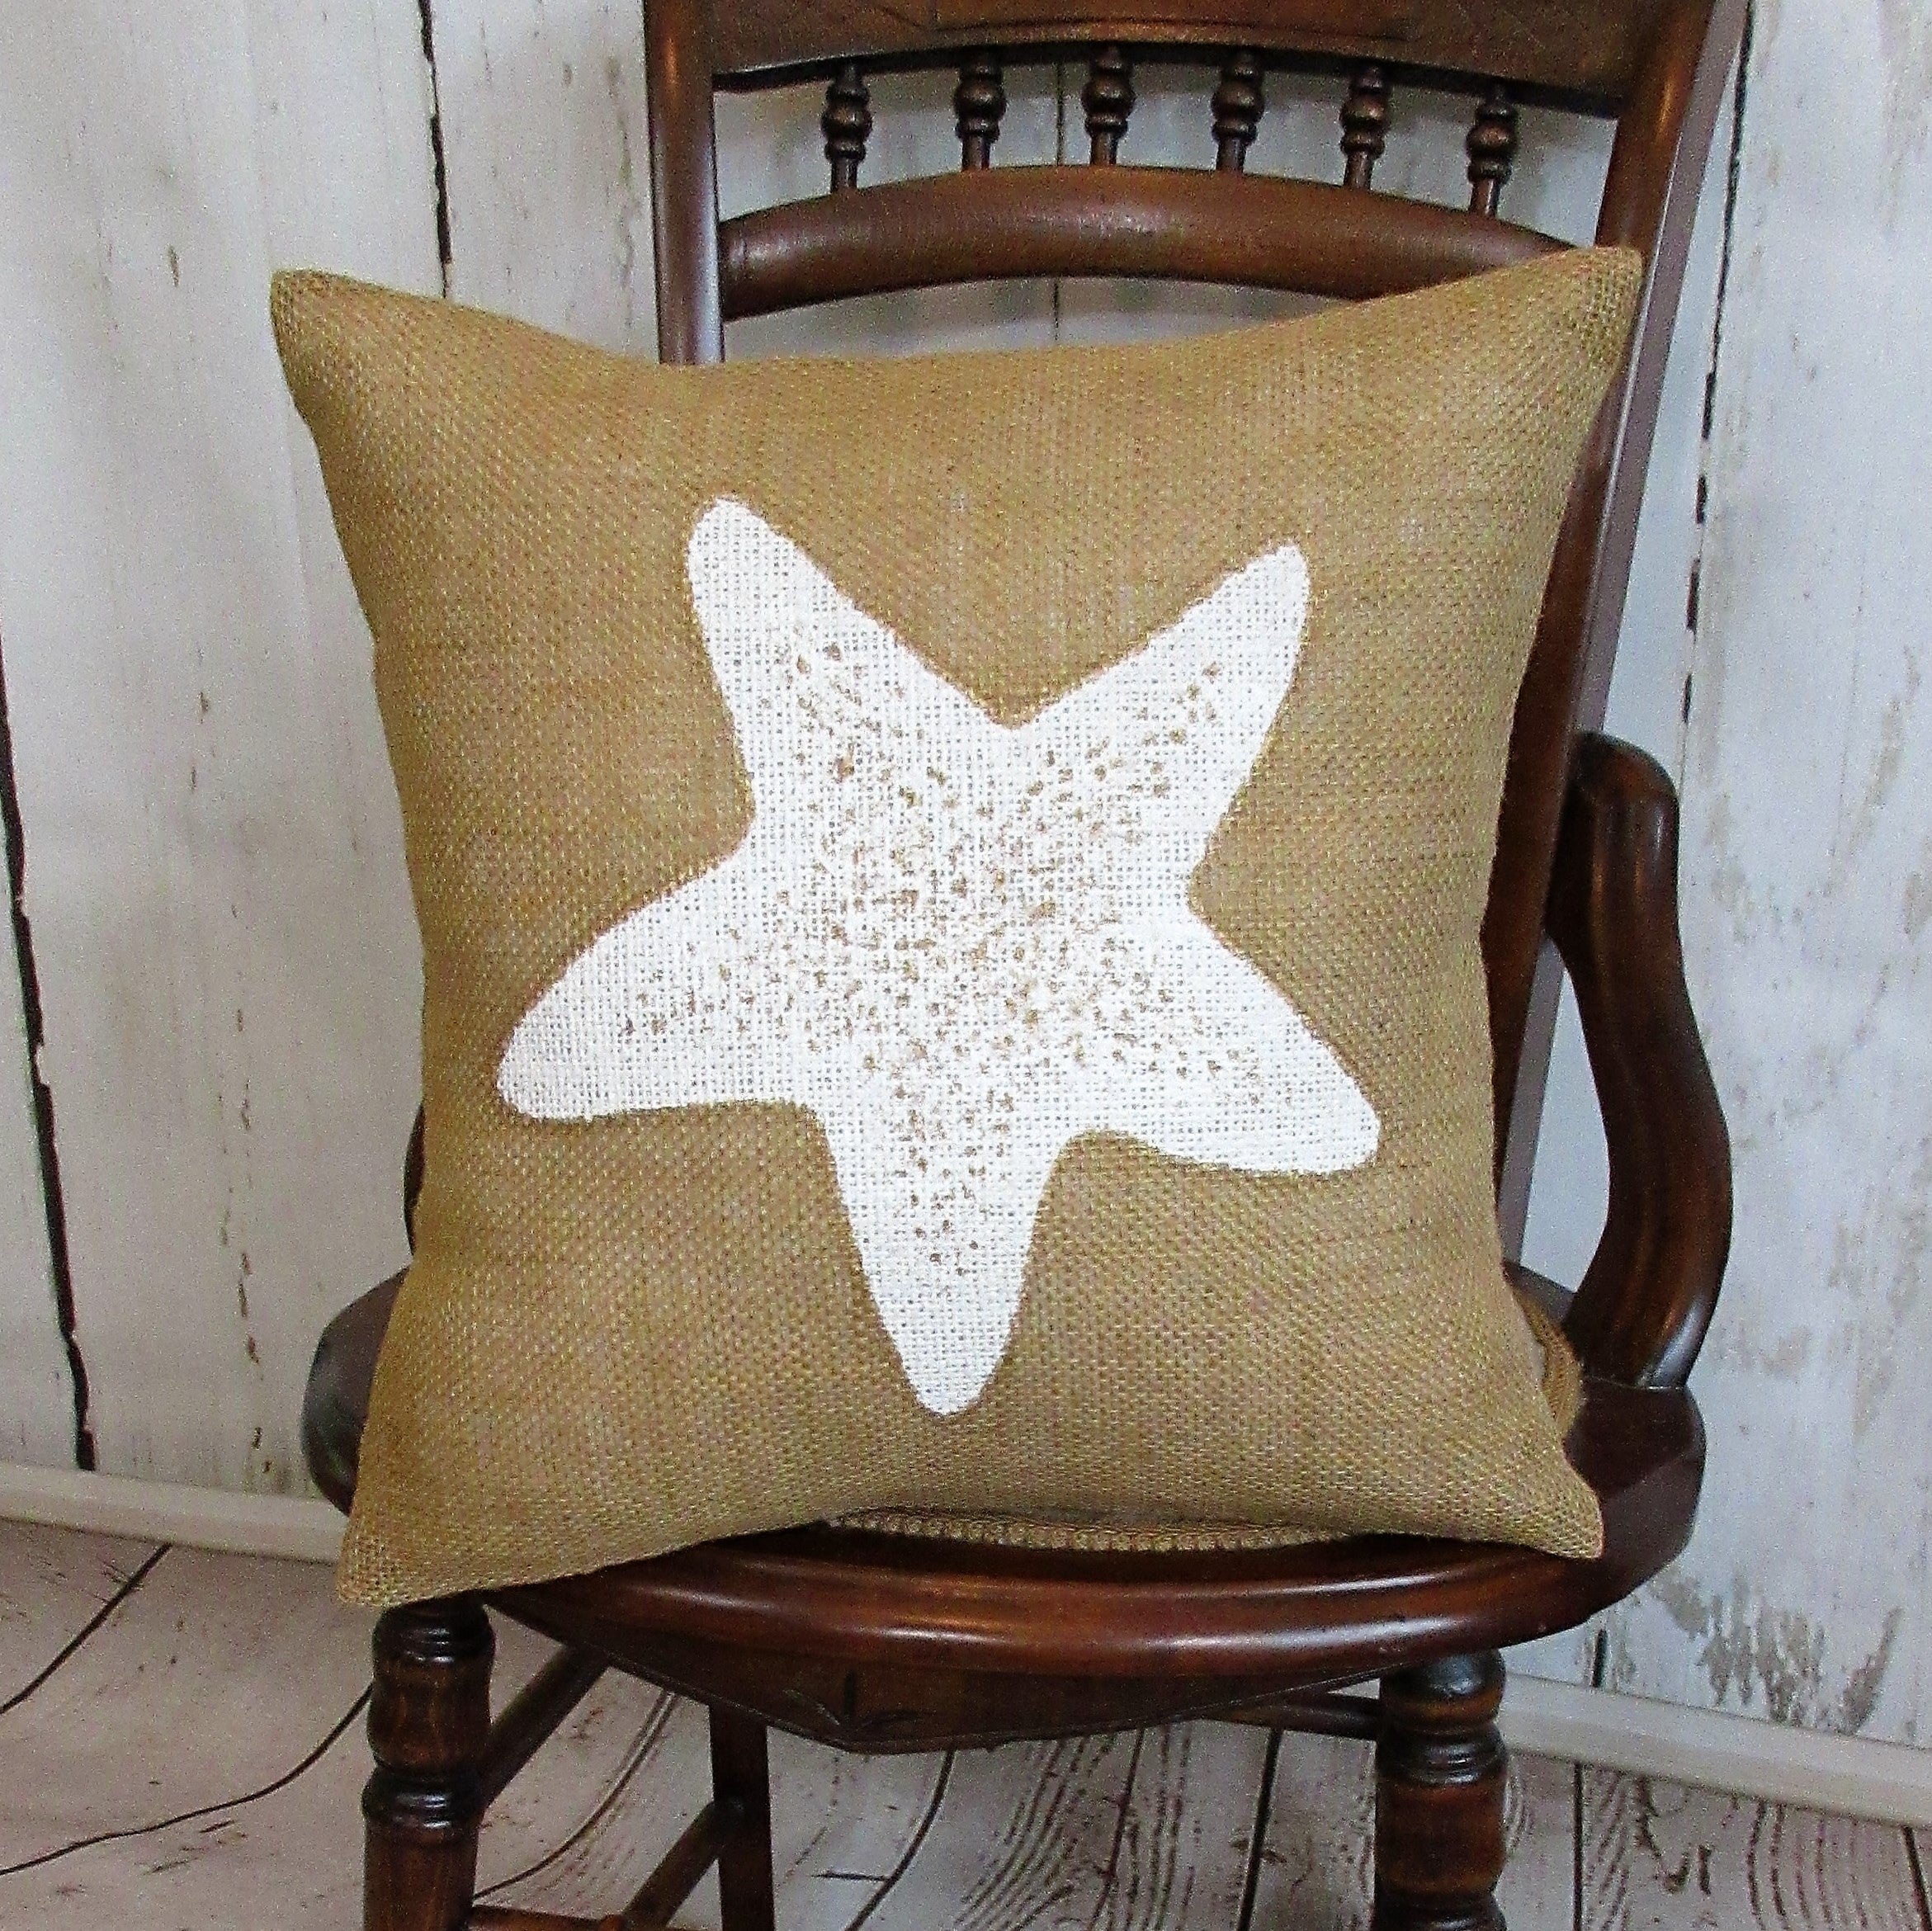 Starfish Burlap Pillow